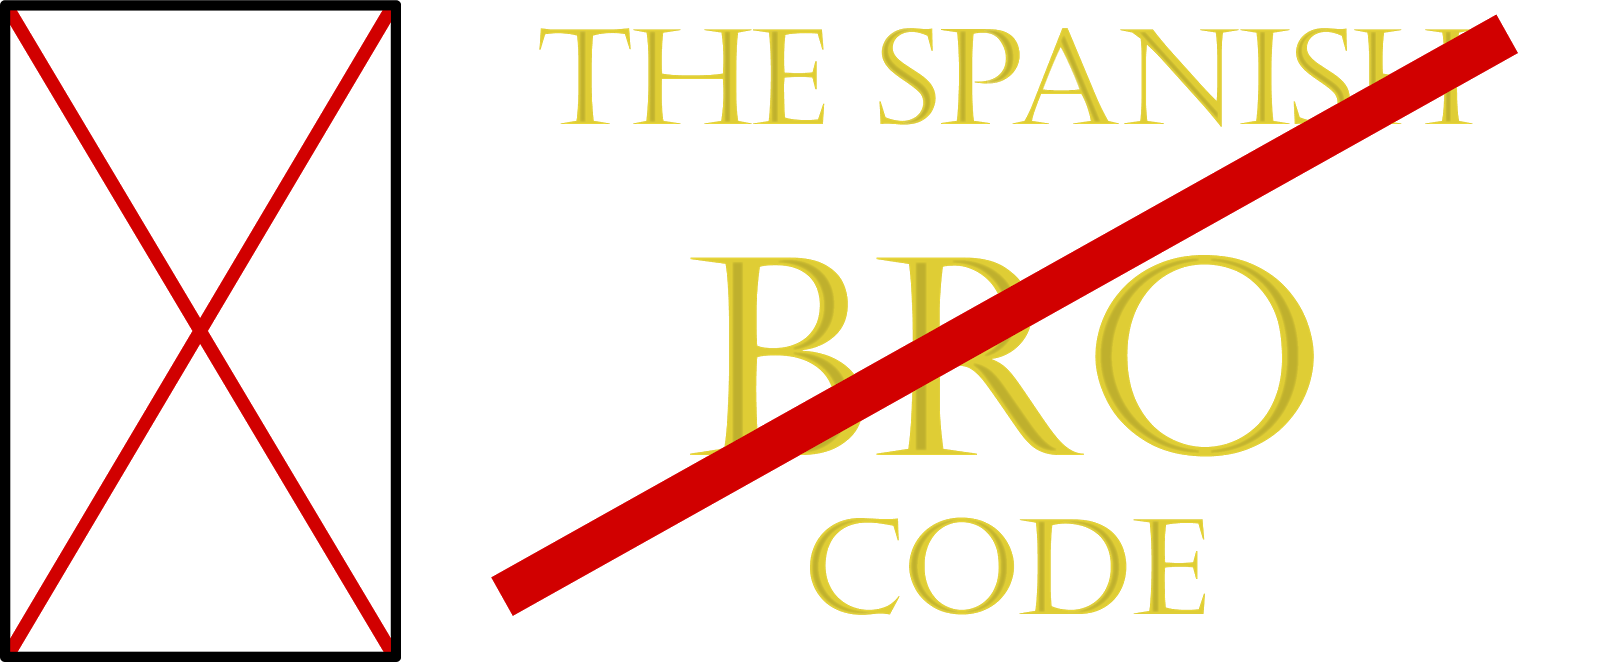 The Spanish Bro Code